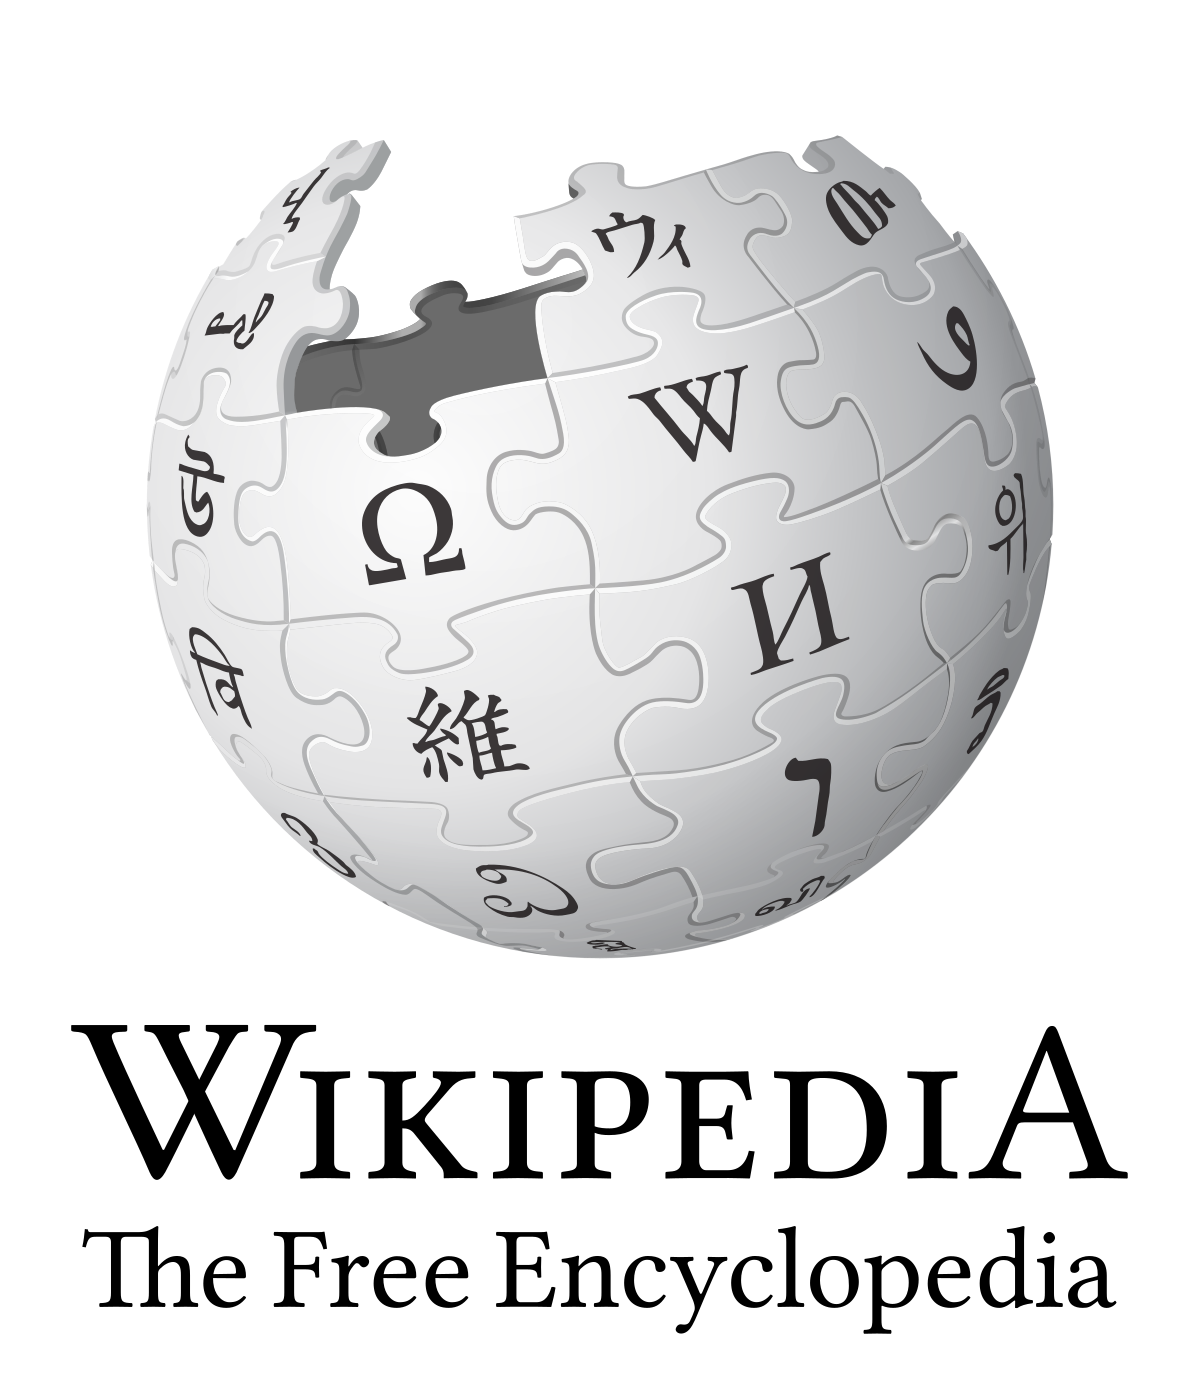 WMF Group - Wikipedia